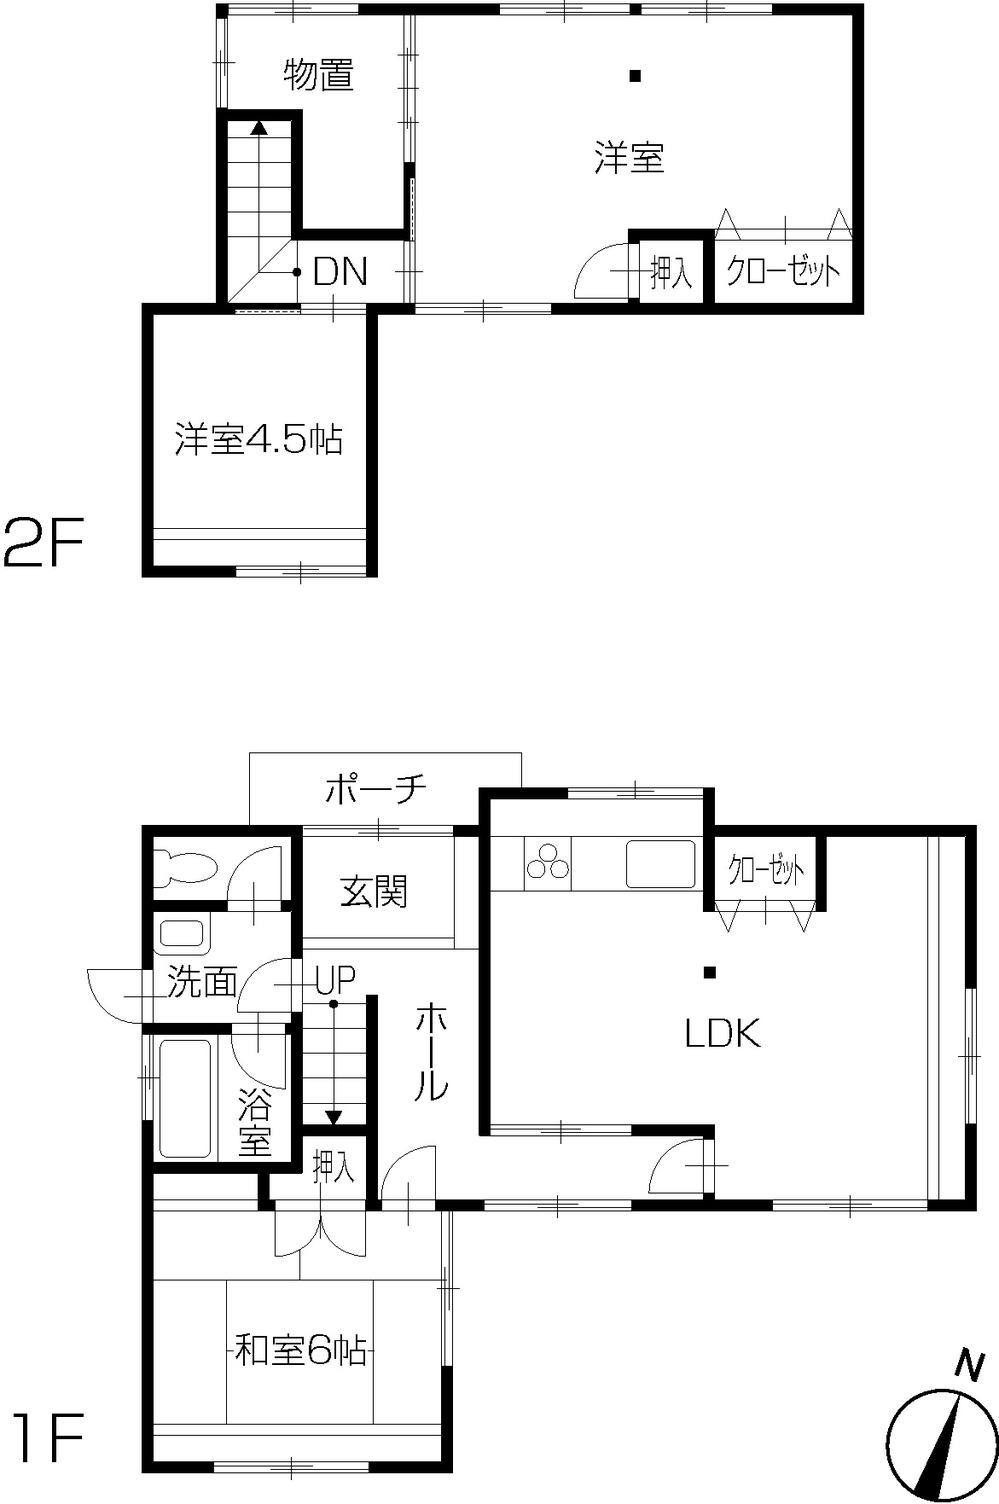 Floor plan. 16.8 million yen, 3LDK, Land area 166.51 sq m , Building area 82.37 sq m